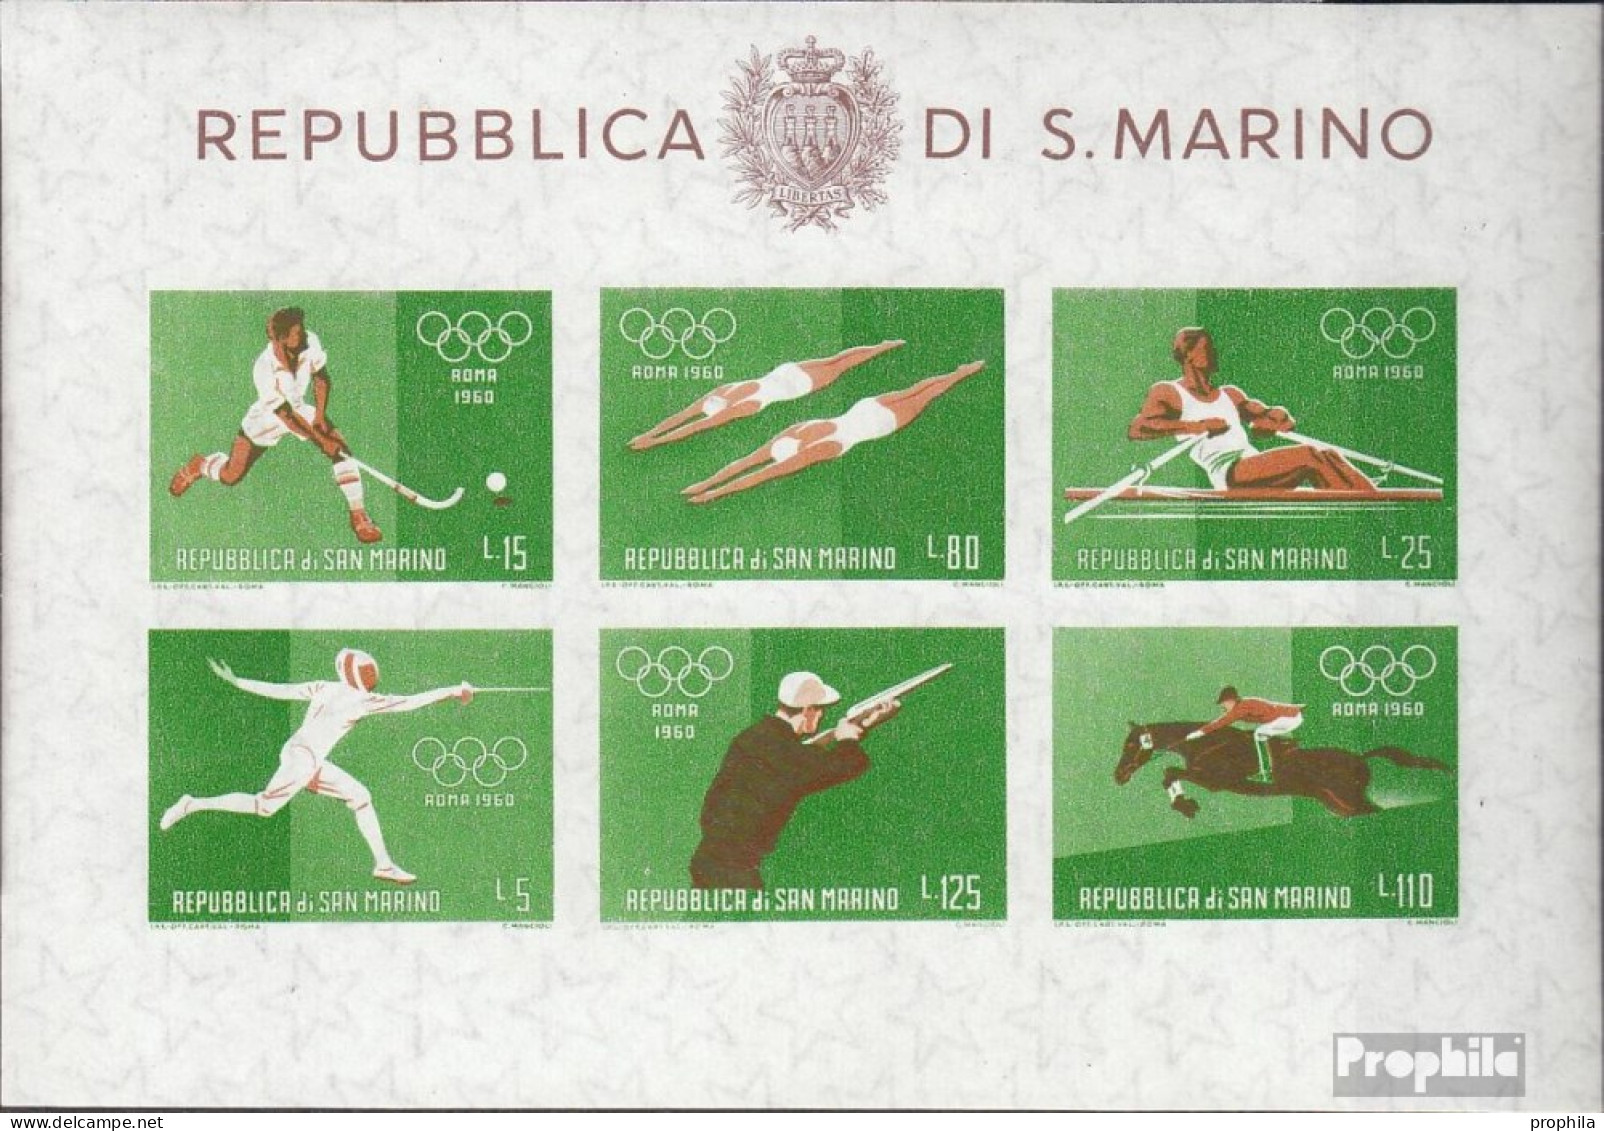 San Marino Block7 (kompl.Ausg.) Postfrisch 1960 Sommerolympiade - Blocks & Sheetlets